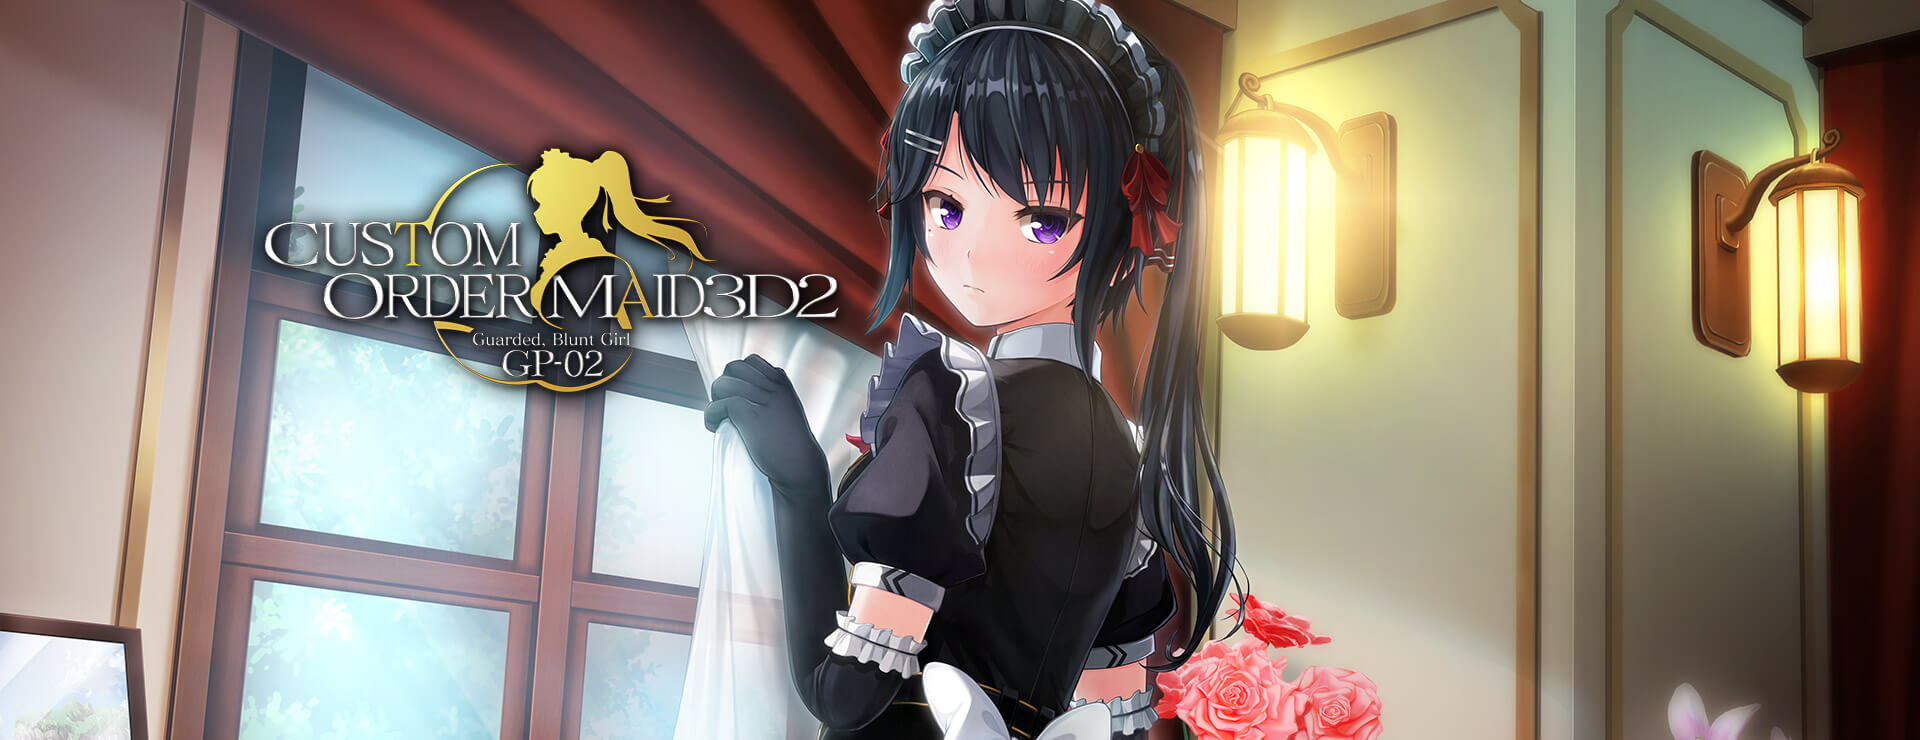 Custom Order Maid 3D2: Guarded, Blunt Girl GP02 DLC - Simulation Spiel